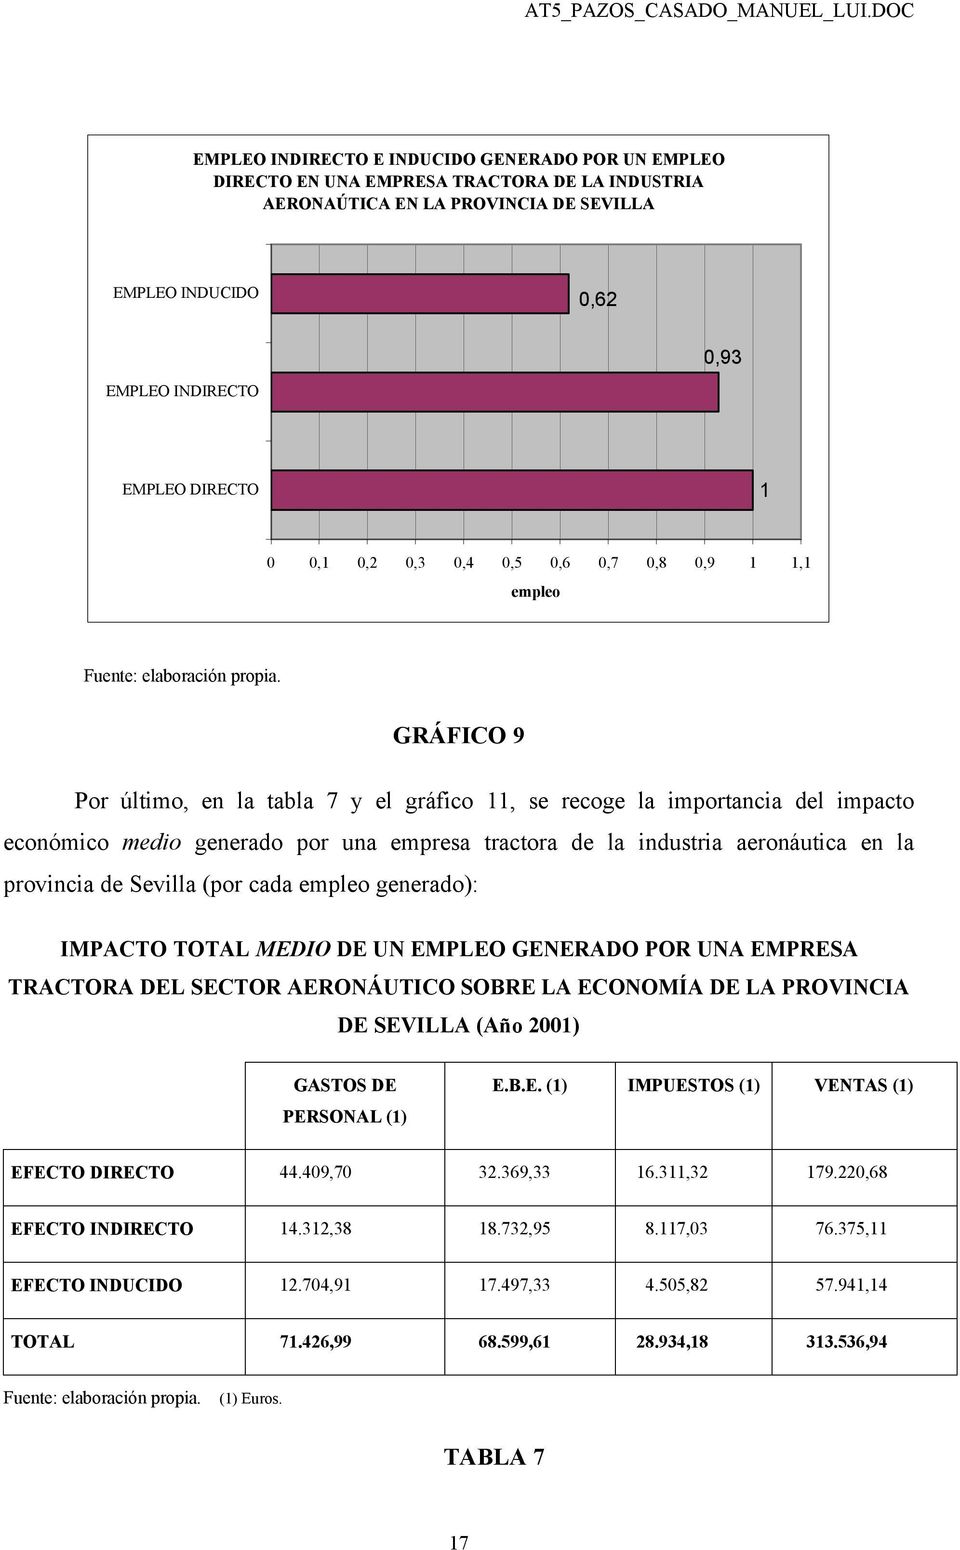 GRÁFICO 9 Por último, en la tabla 7 y el gráfico 11, se recoge la importancia del impacto económico medio generado por una empresa tractora de la industria aeronáutica en la provincia de Sevilla (por